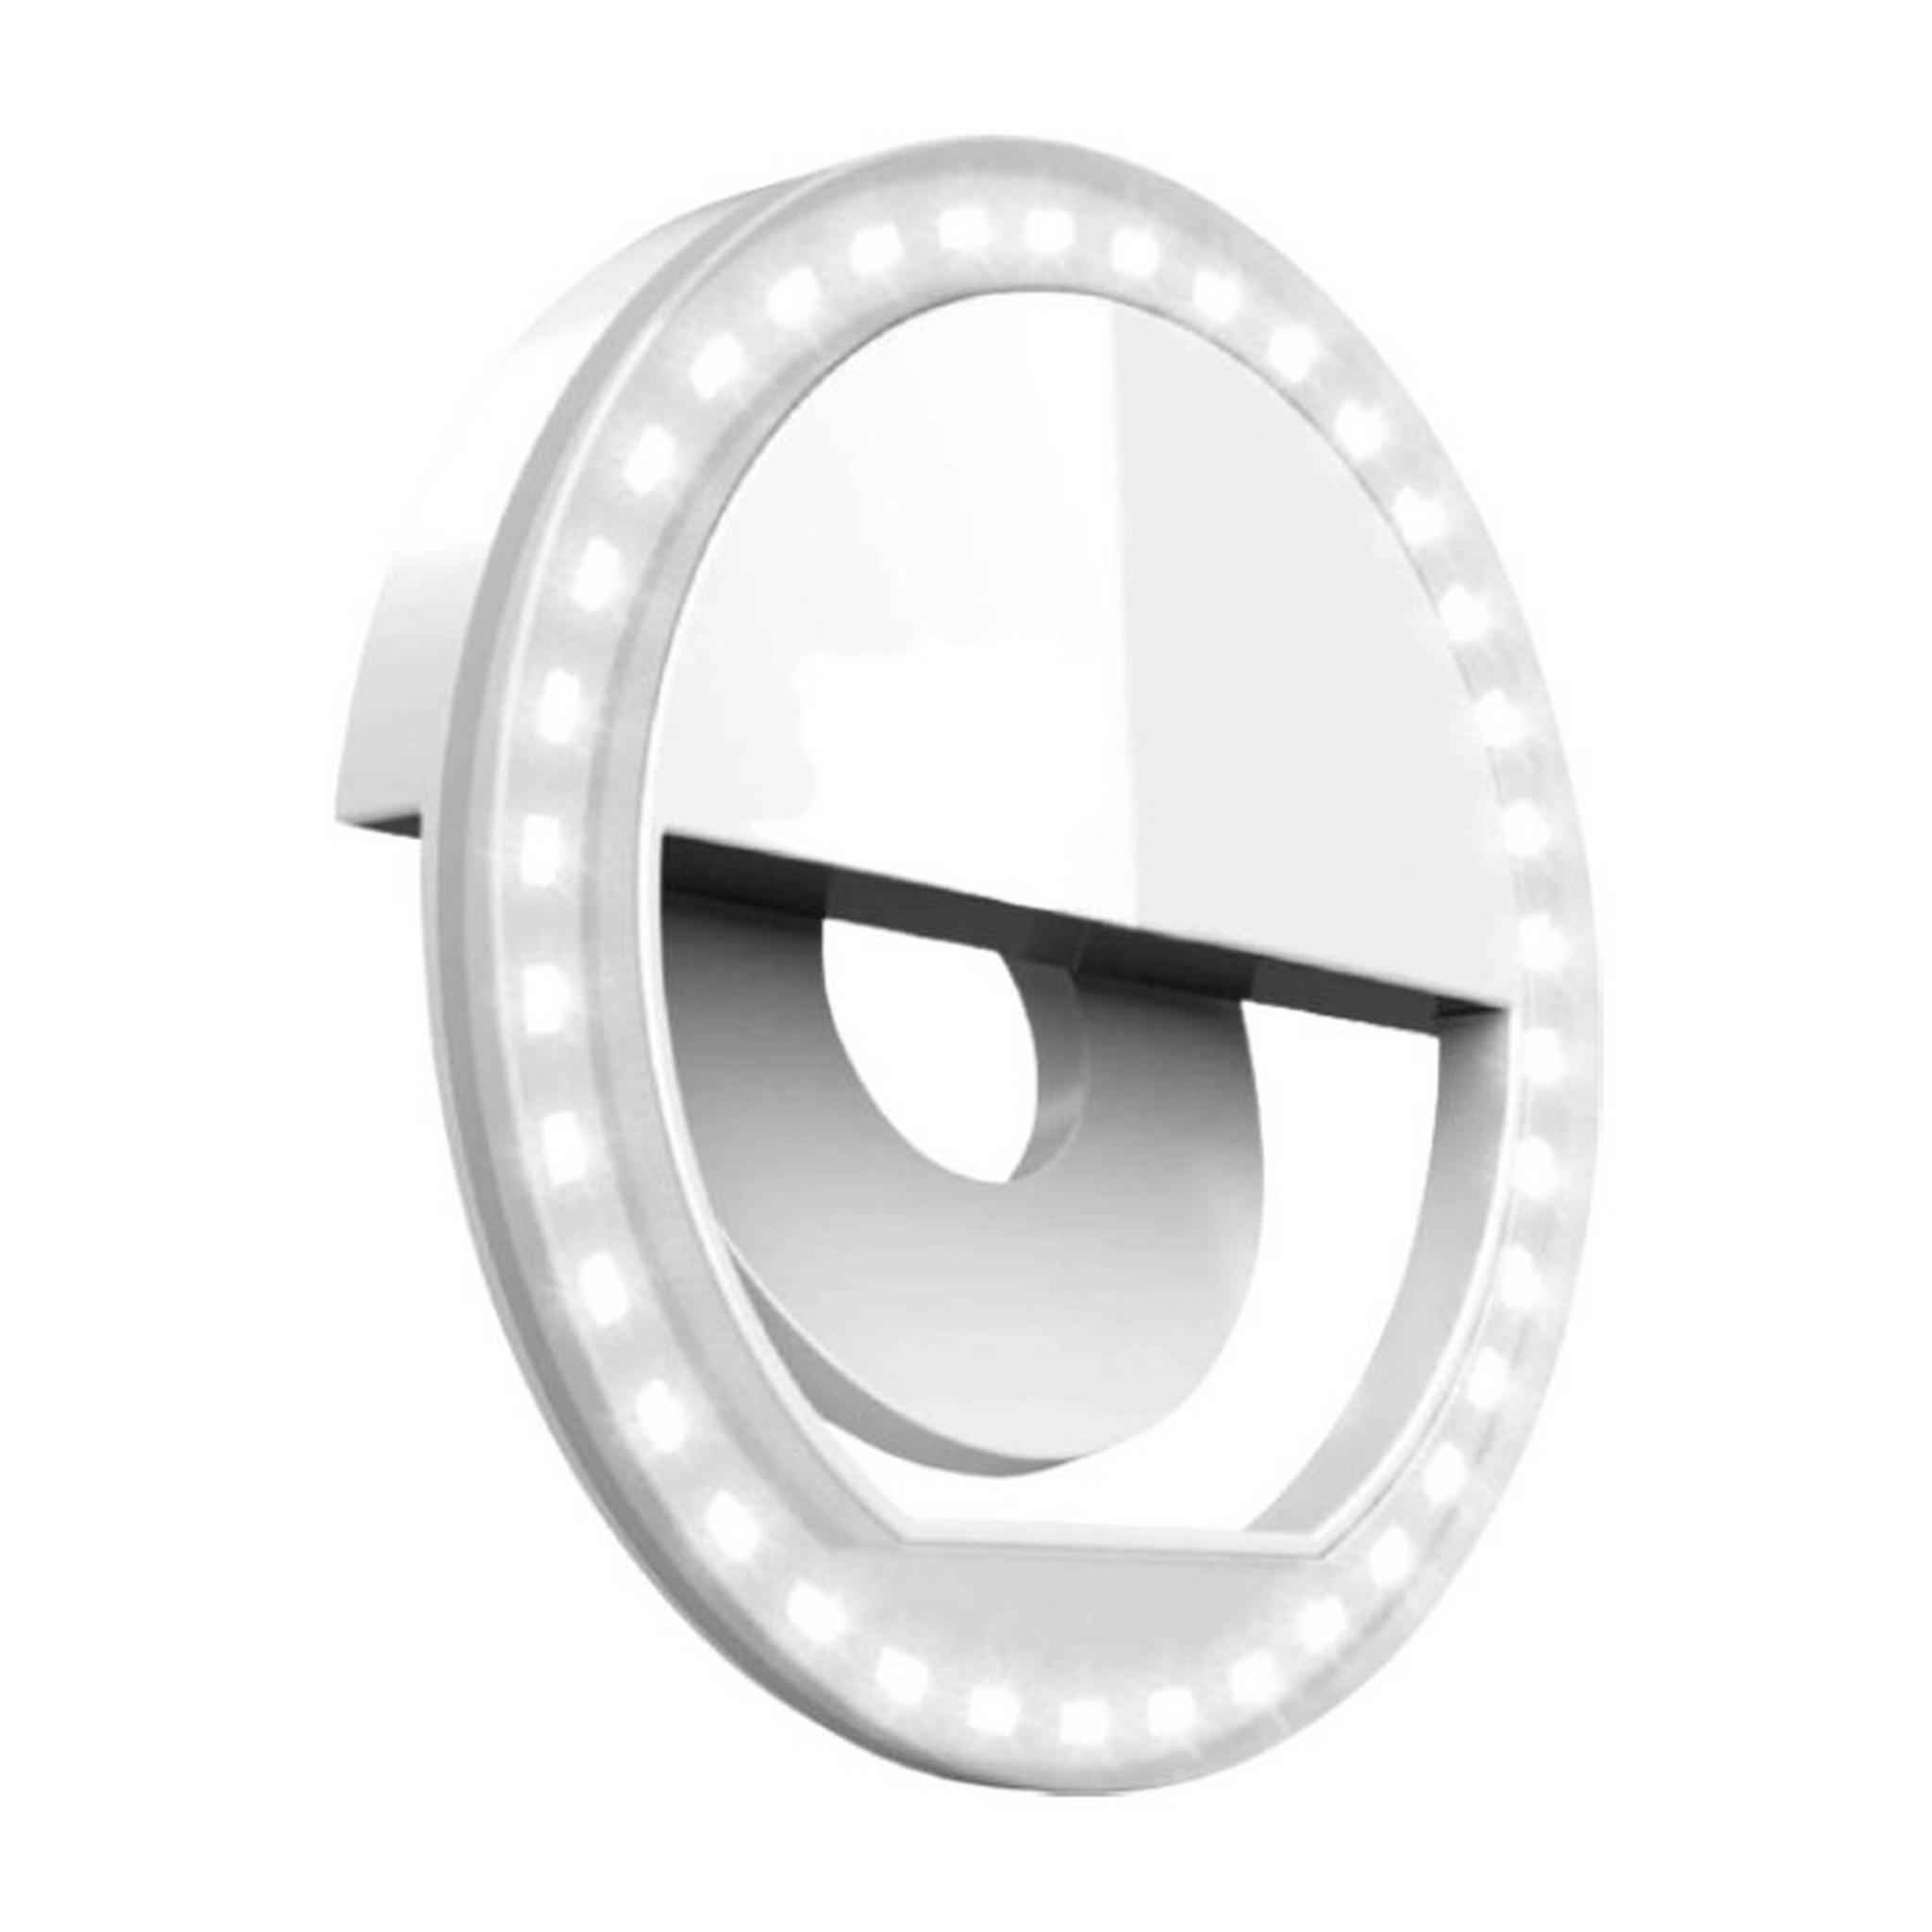 ضوء ال-اي-دي دائري للتصوير بالهاتف - أبيض